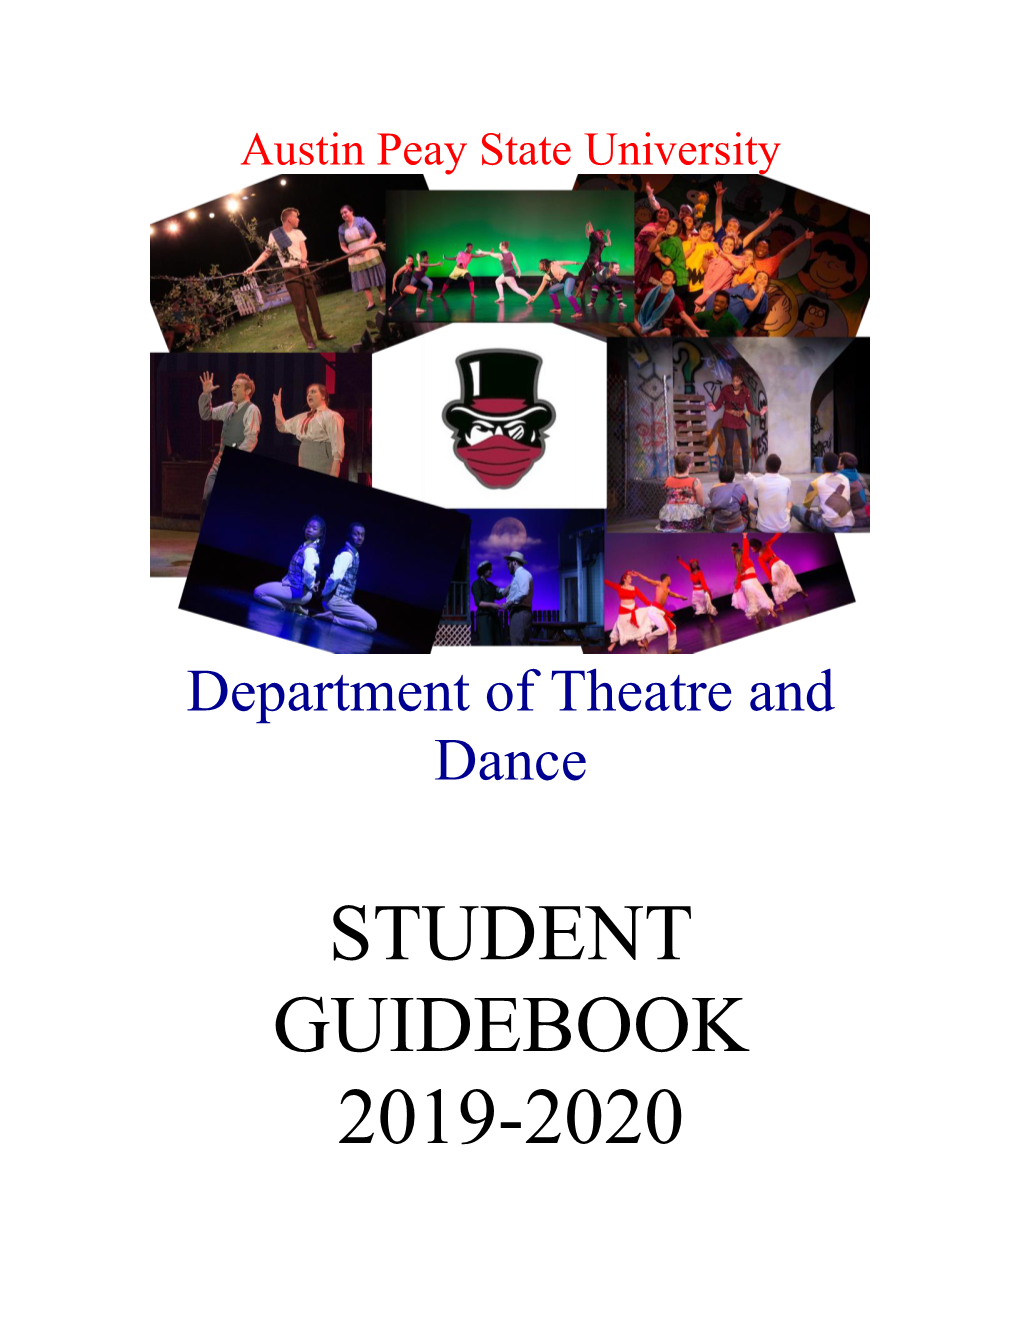 Student Guidebook 2019-2020